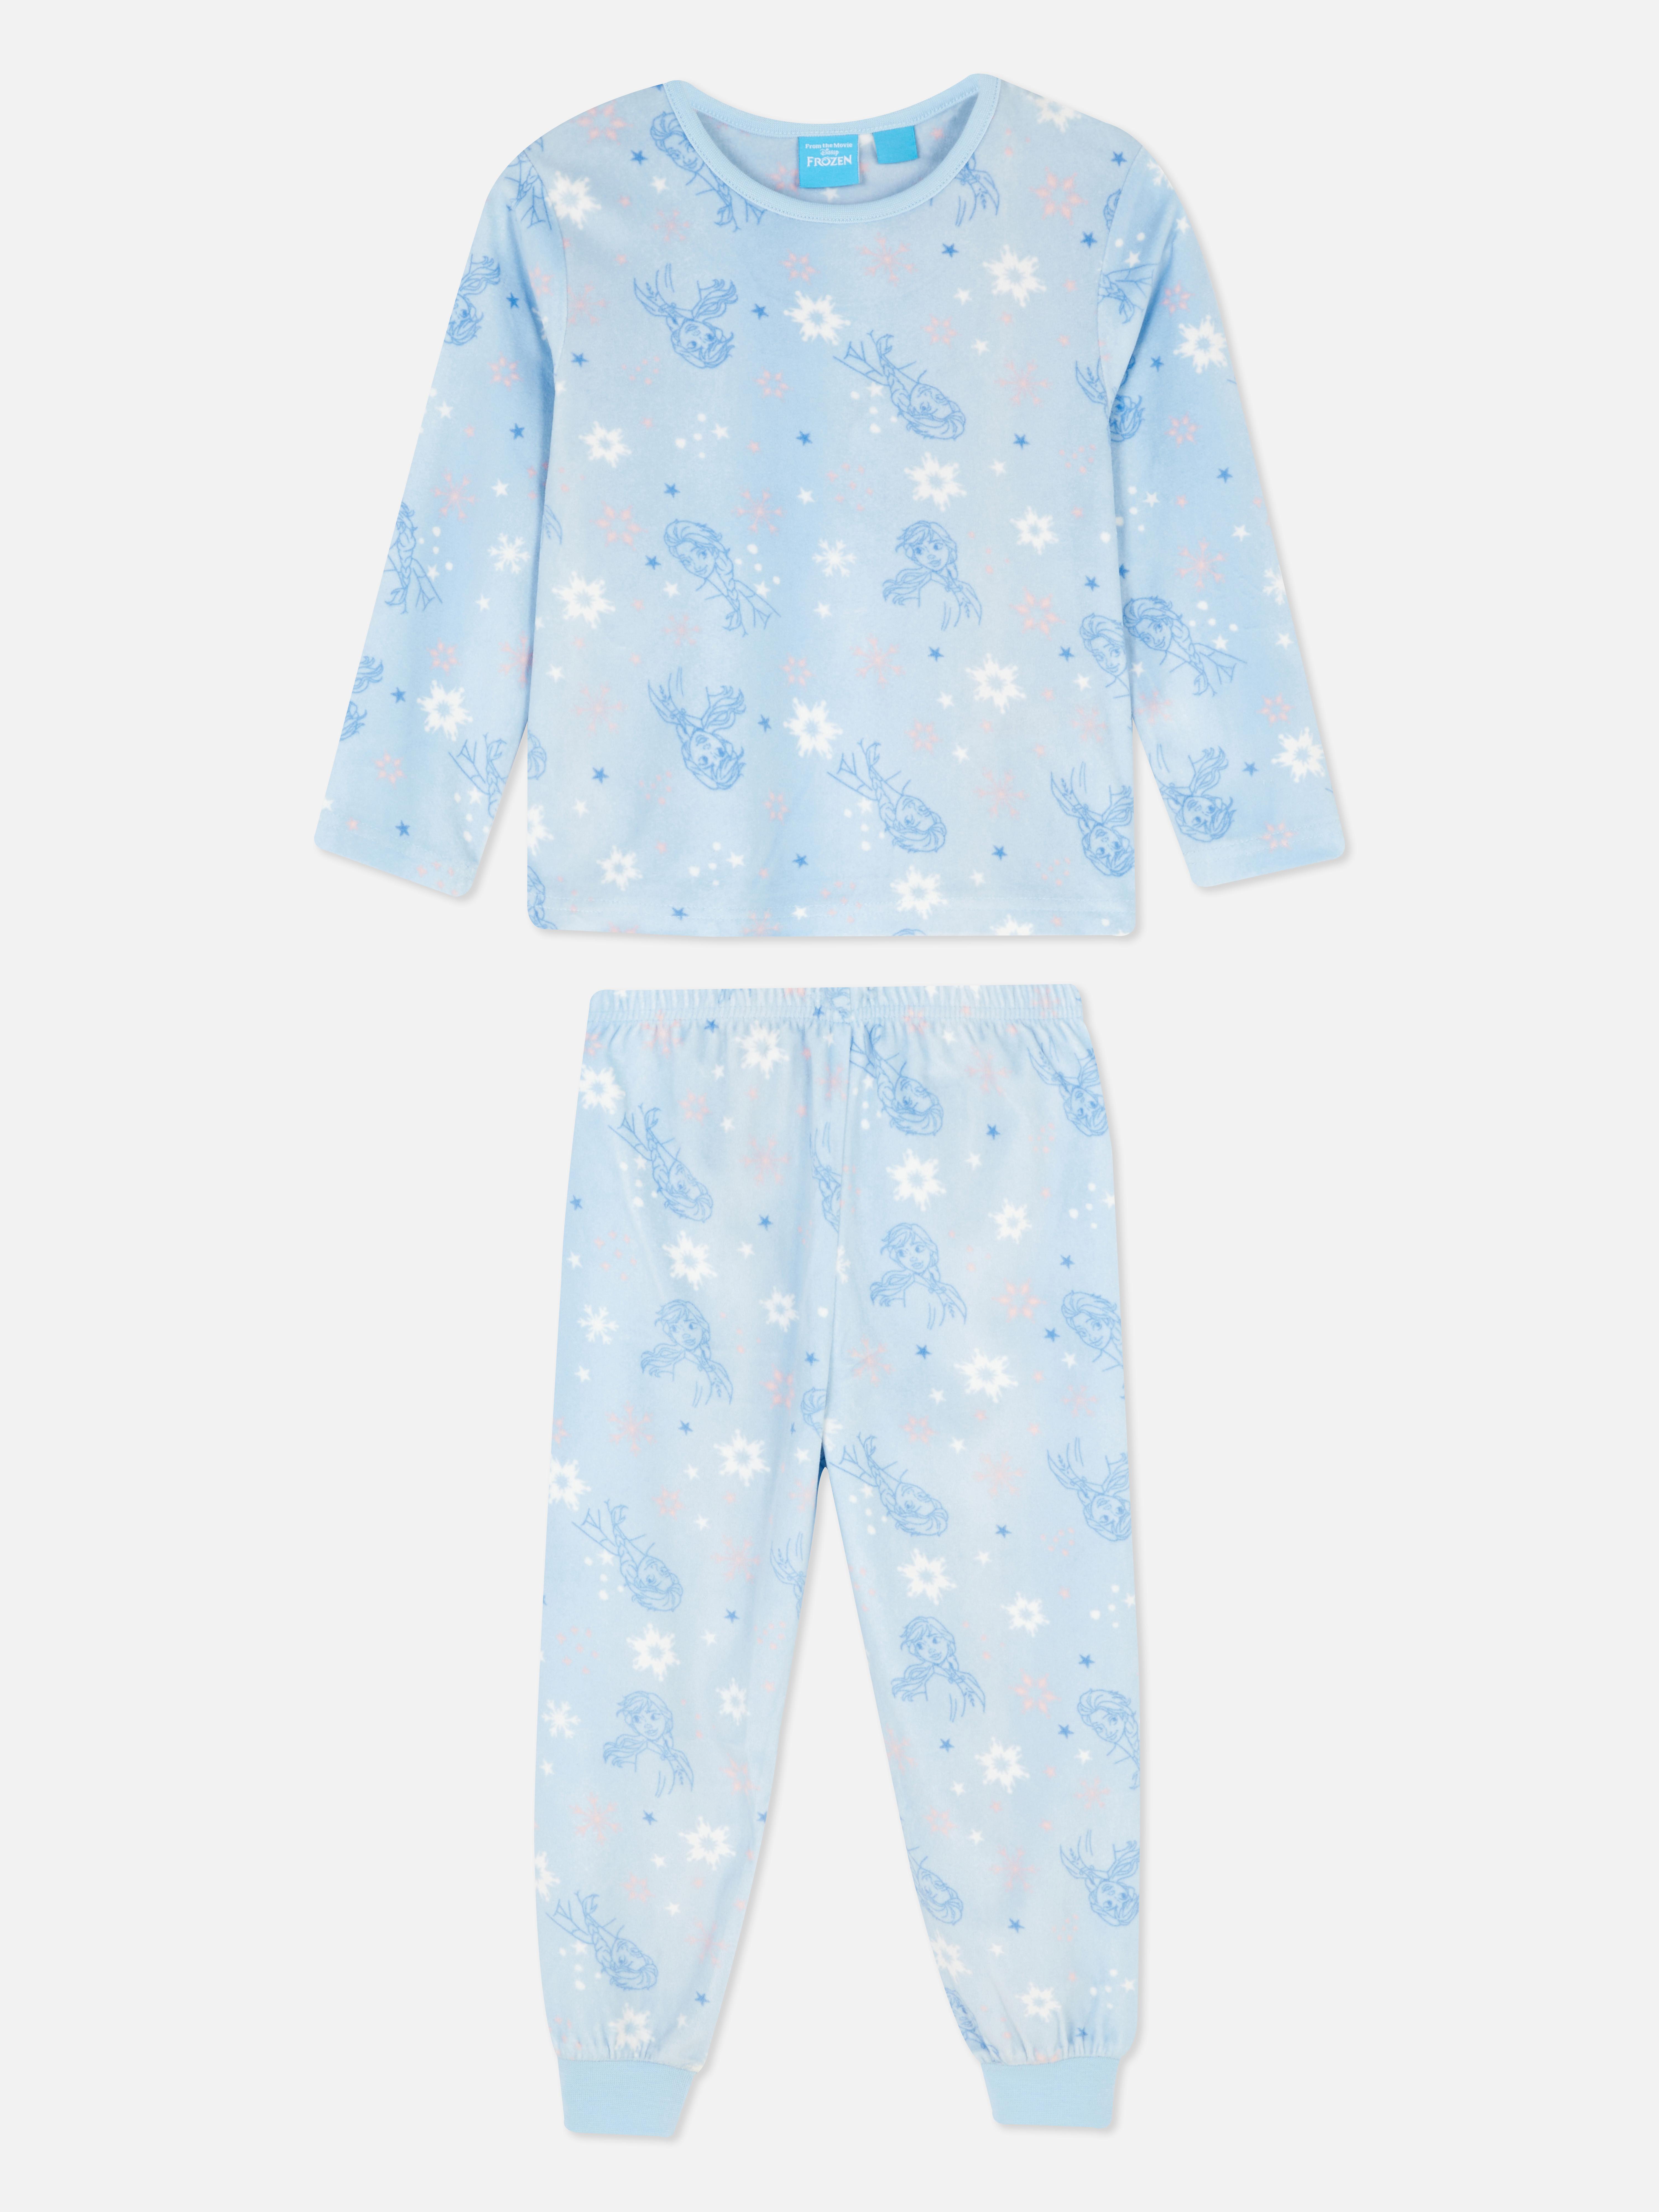 Disney’s Frozen Minky Pyjama Set